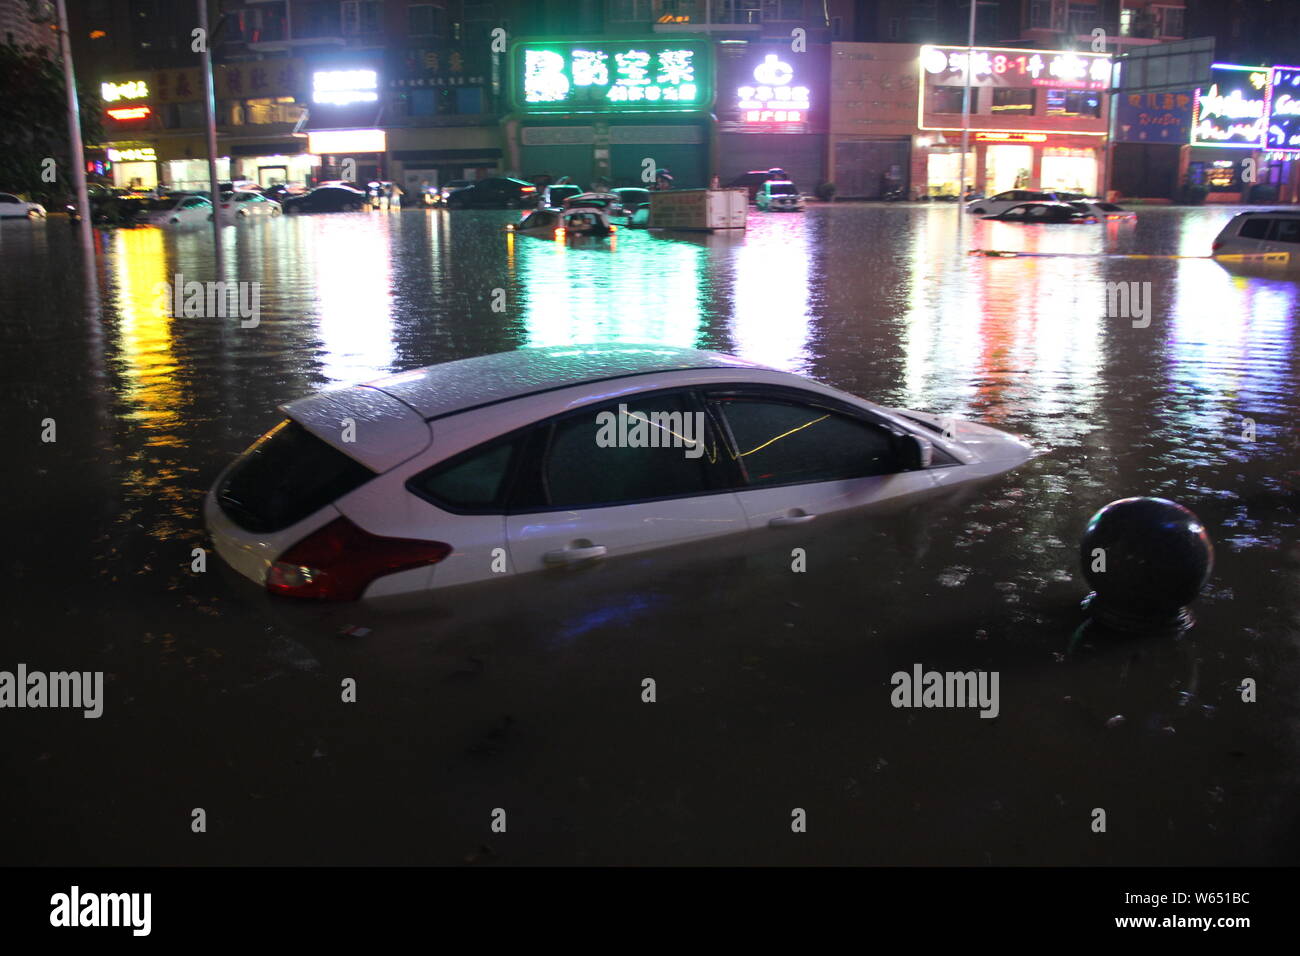 Les voitures sont à demi submergée dans la région inondée causée par de fortes pluies dans la région de Guangzhou, province du Guangdong en Chine du Sud, 23 août 2018. Une lourde ra Banque D'Images